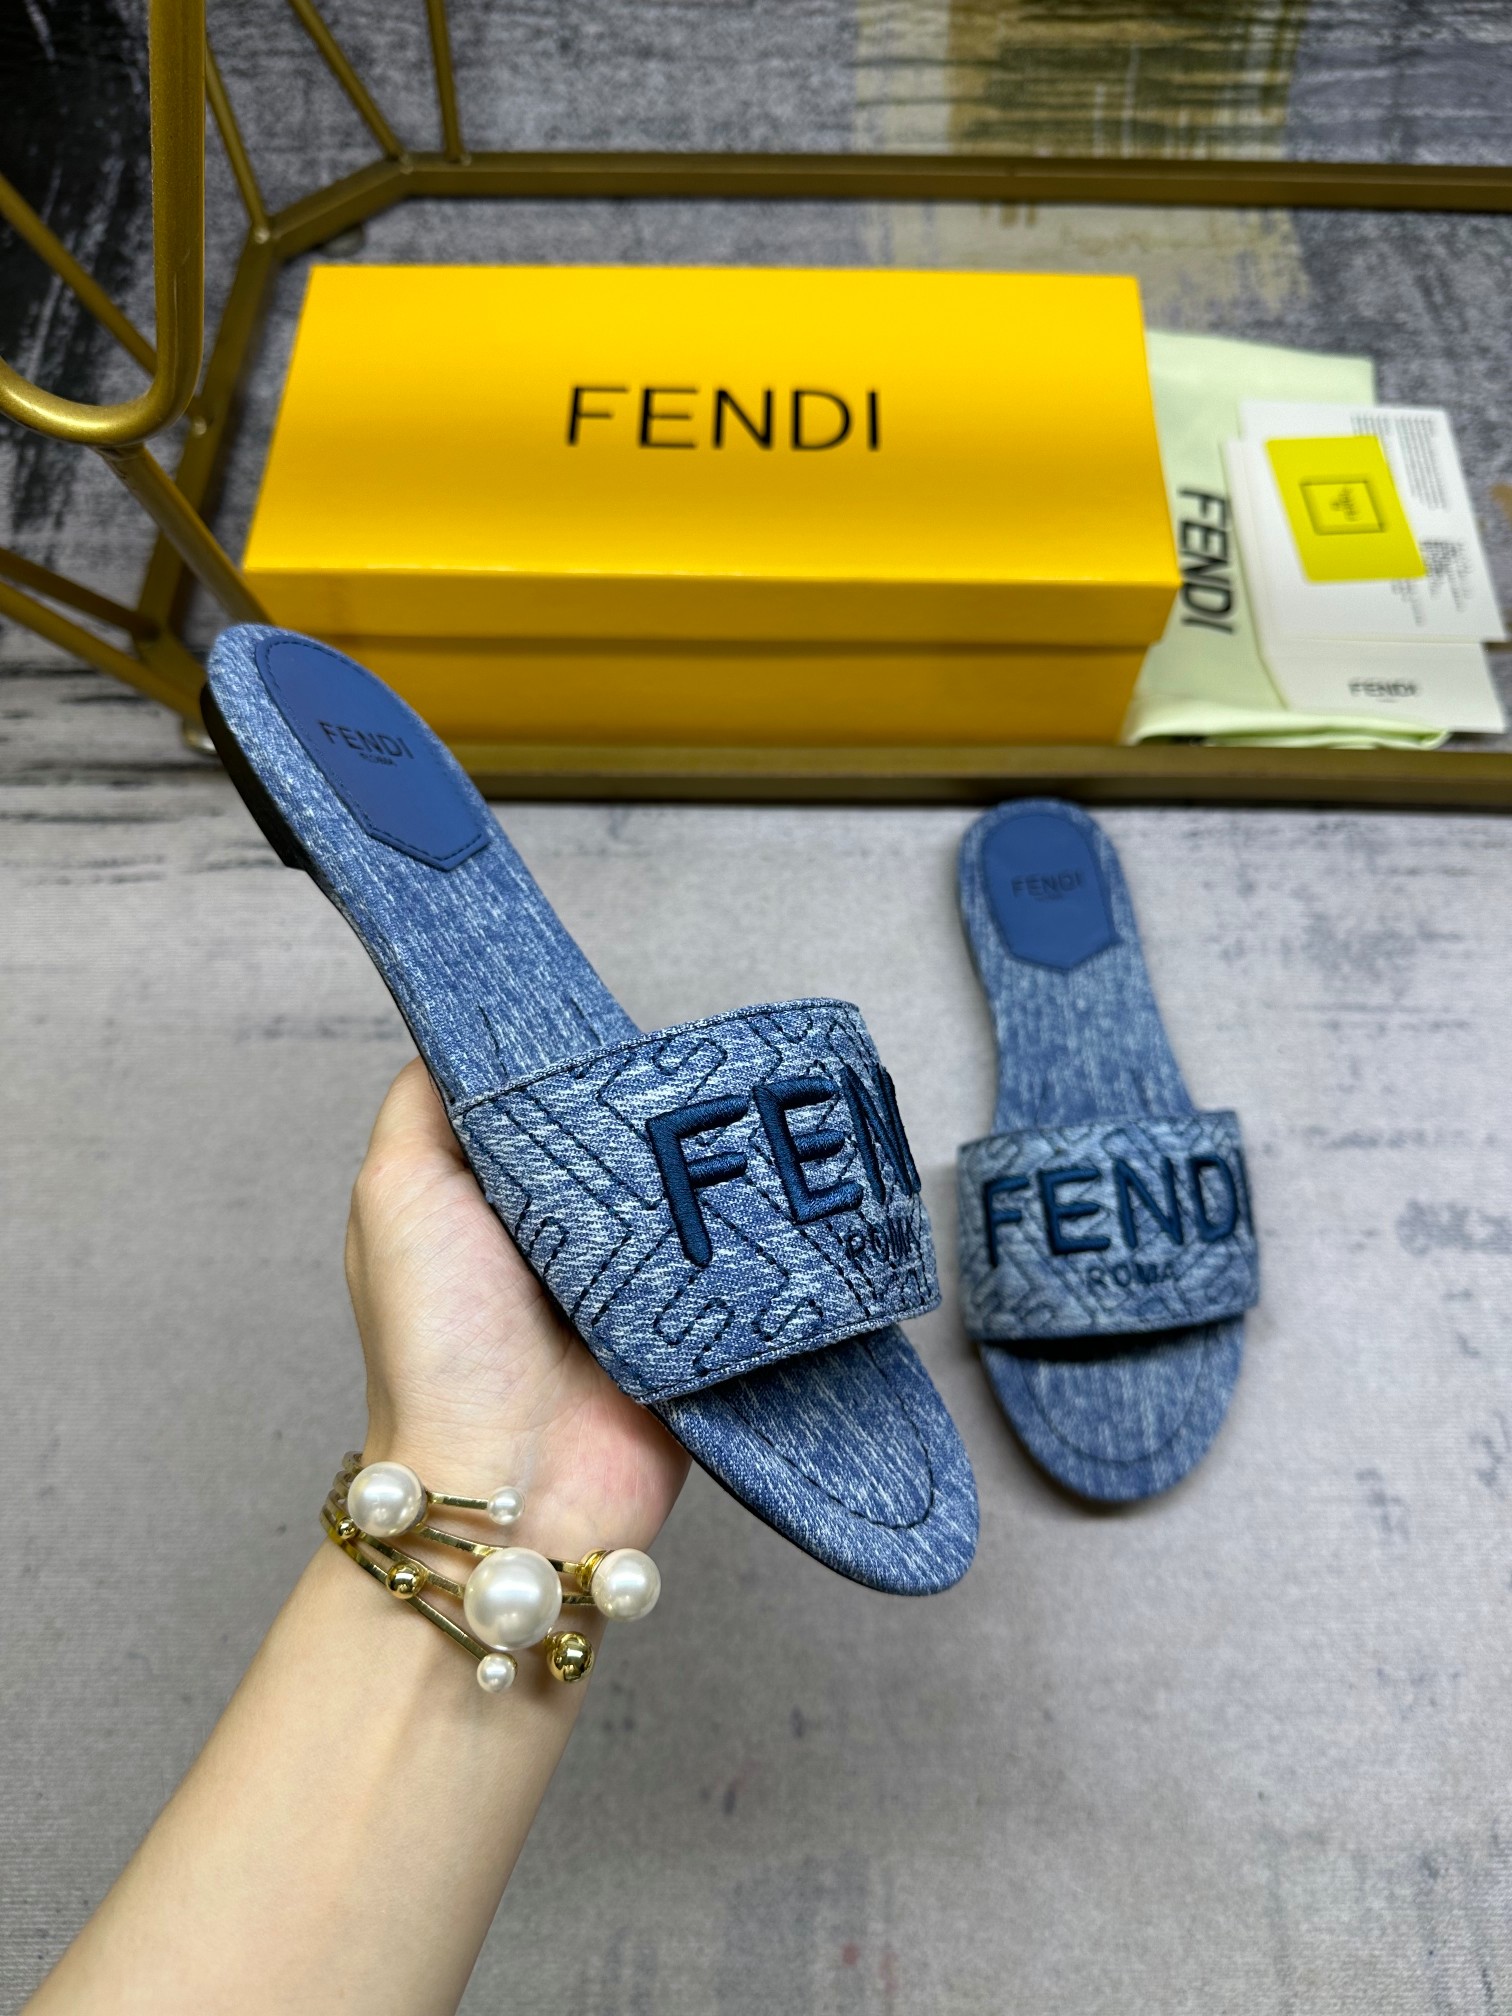 FENDI最新爆款，宽饰带平底拖鞋，仿旧蓝色牛仔布材质饰有缝线FF图案刺绣，35-42码